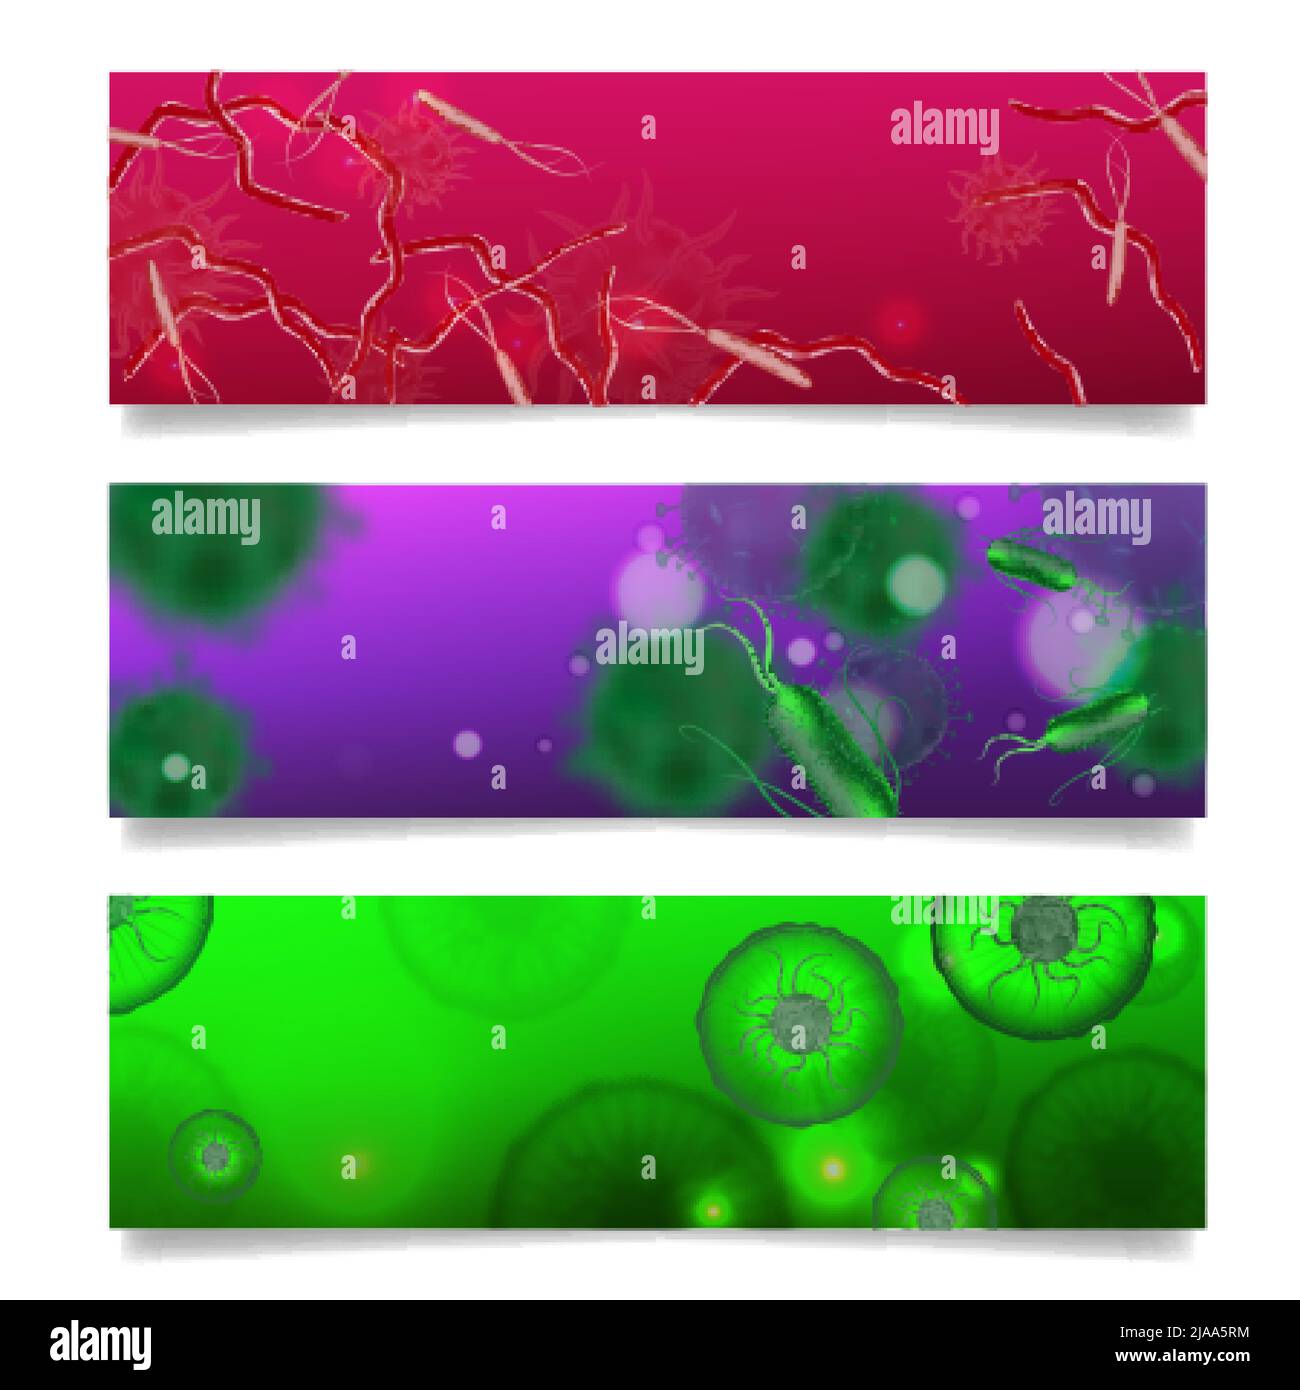 Bakterien Formen Satz von drei horizontalen Bannern mit Kunstwerken und realistischen Bildern von bunten Mikroben Mikroorganismen Vektorgrafik Stock Vektor